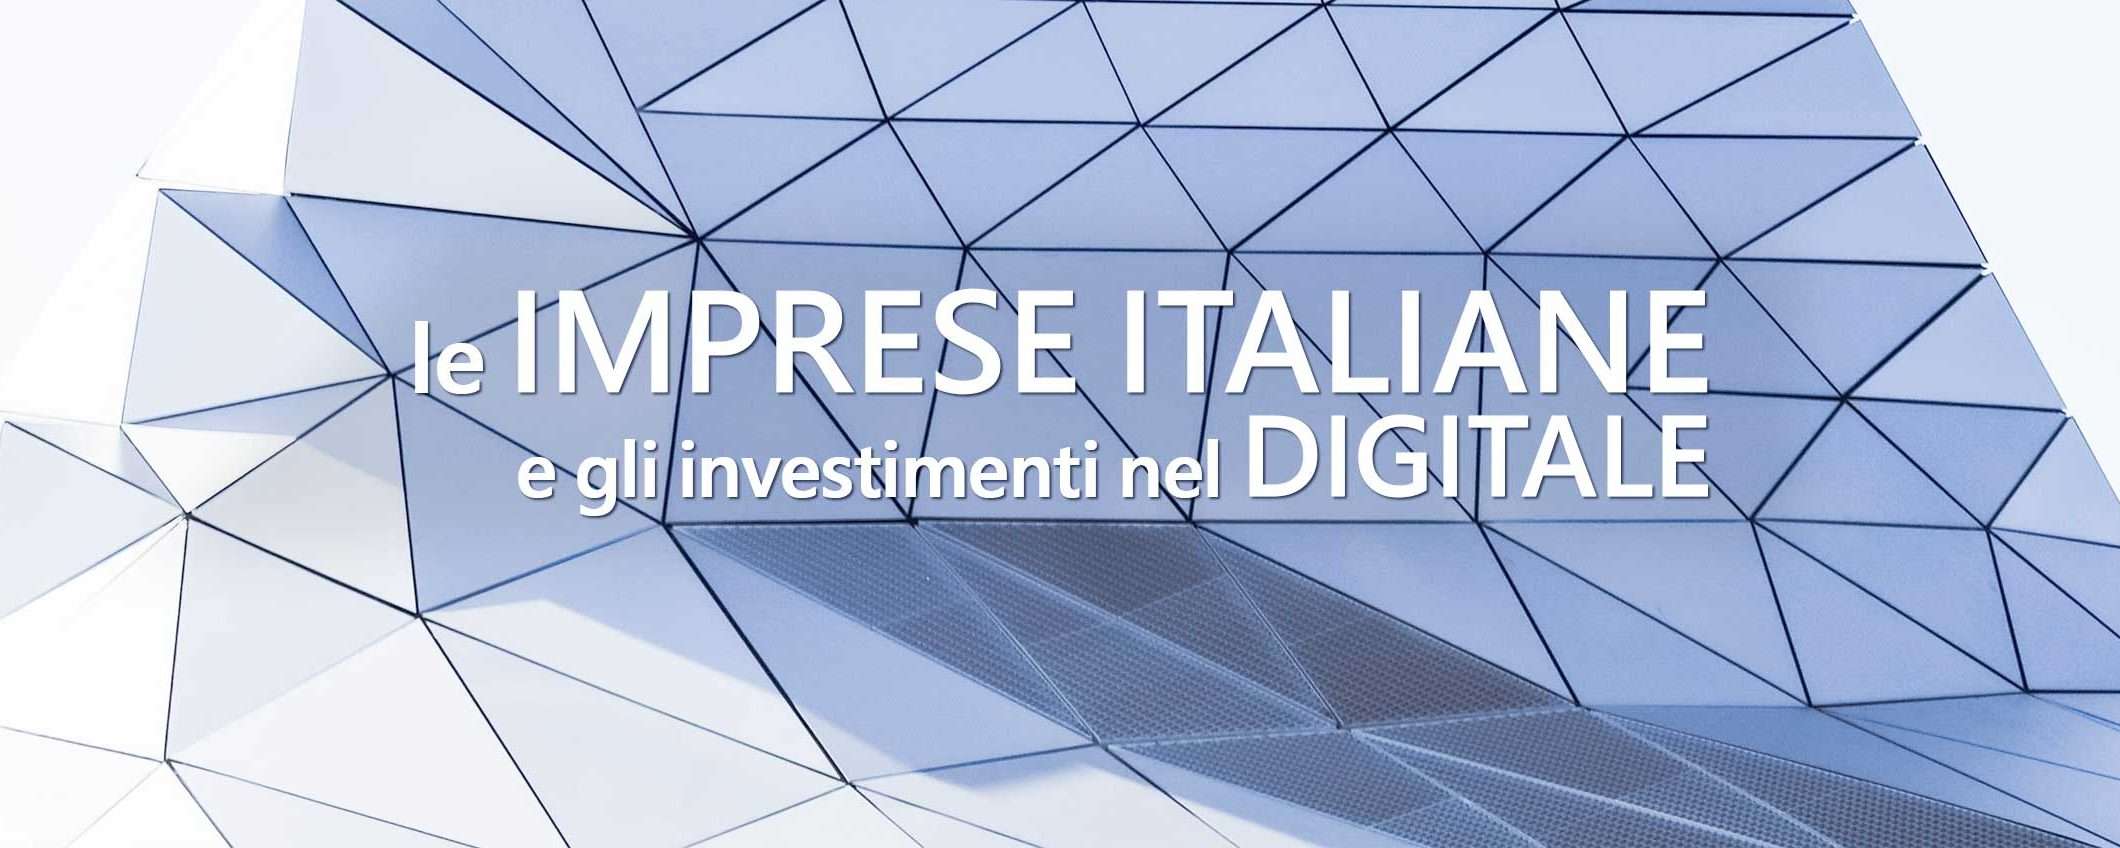 Digitale, il nuovo mantra delle imprese italiane